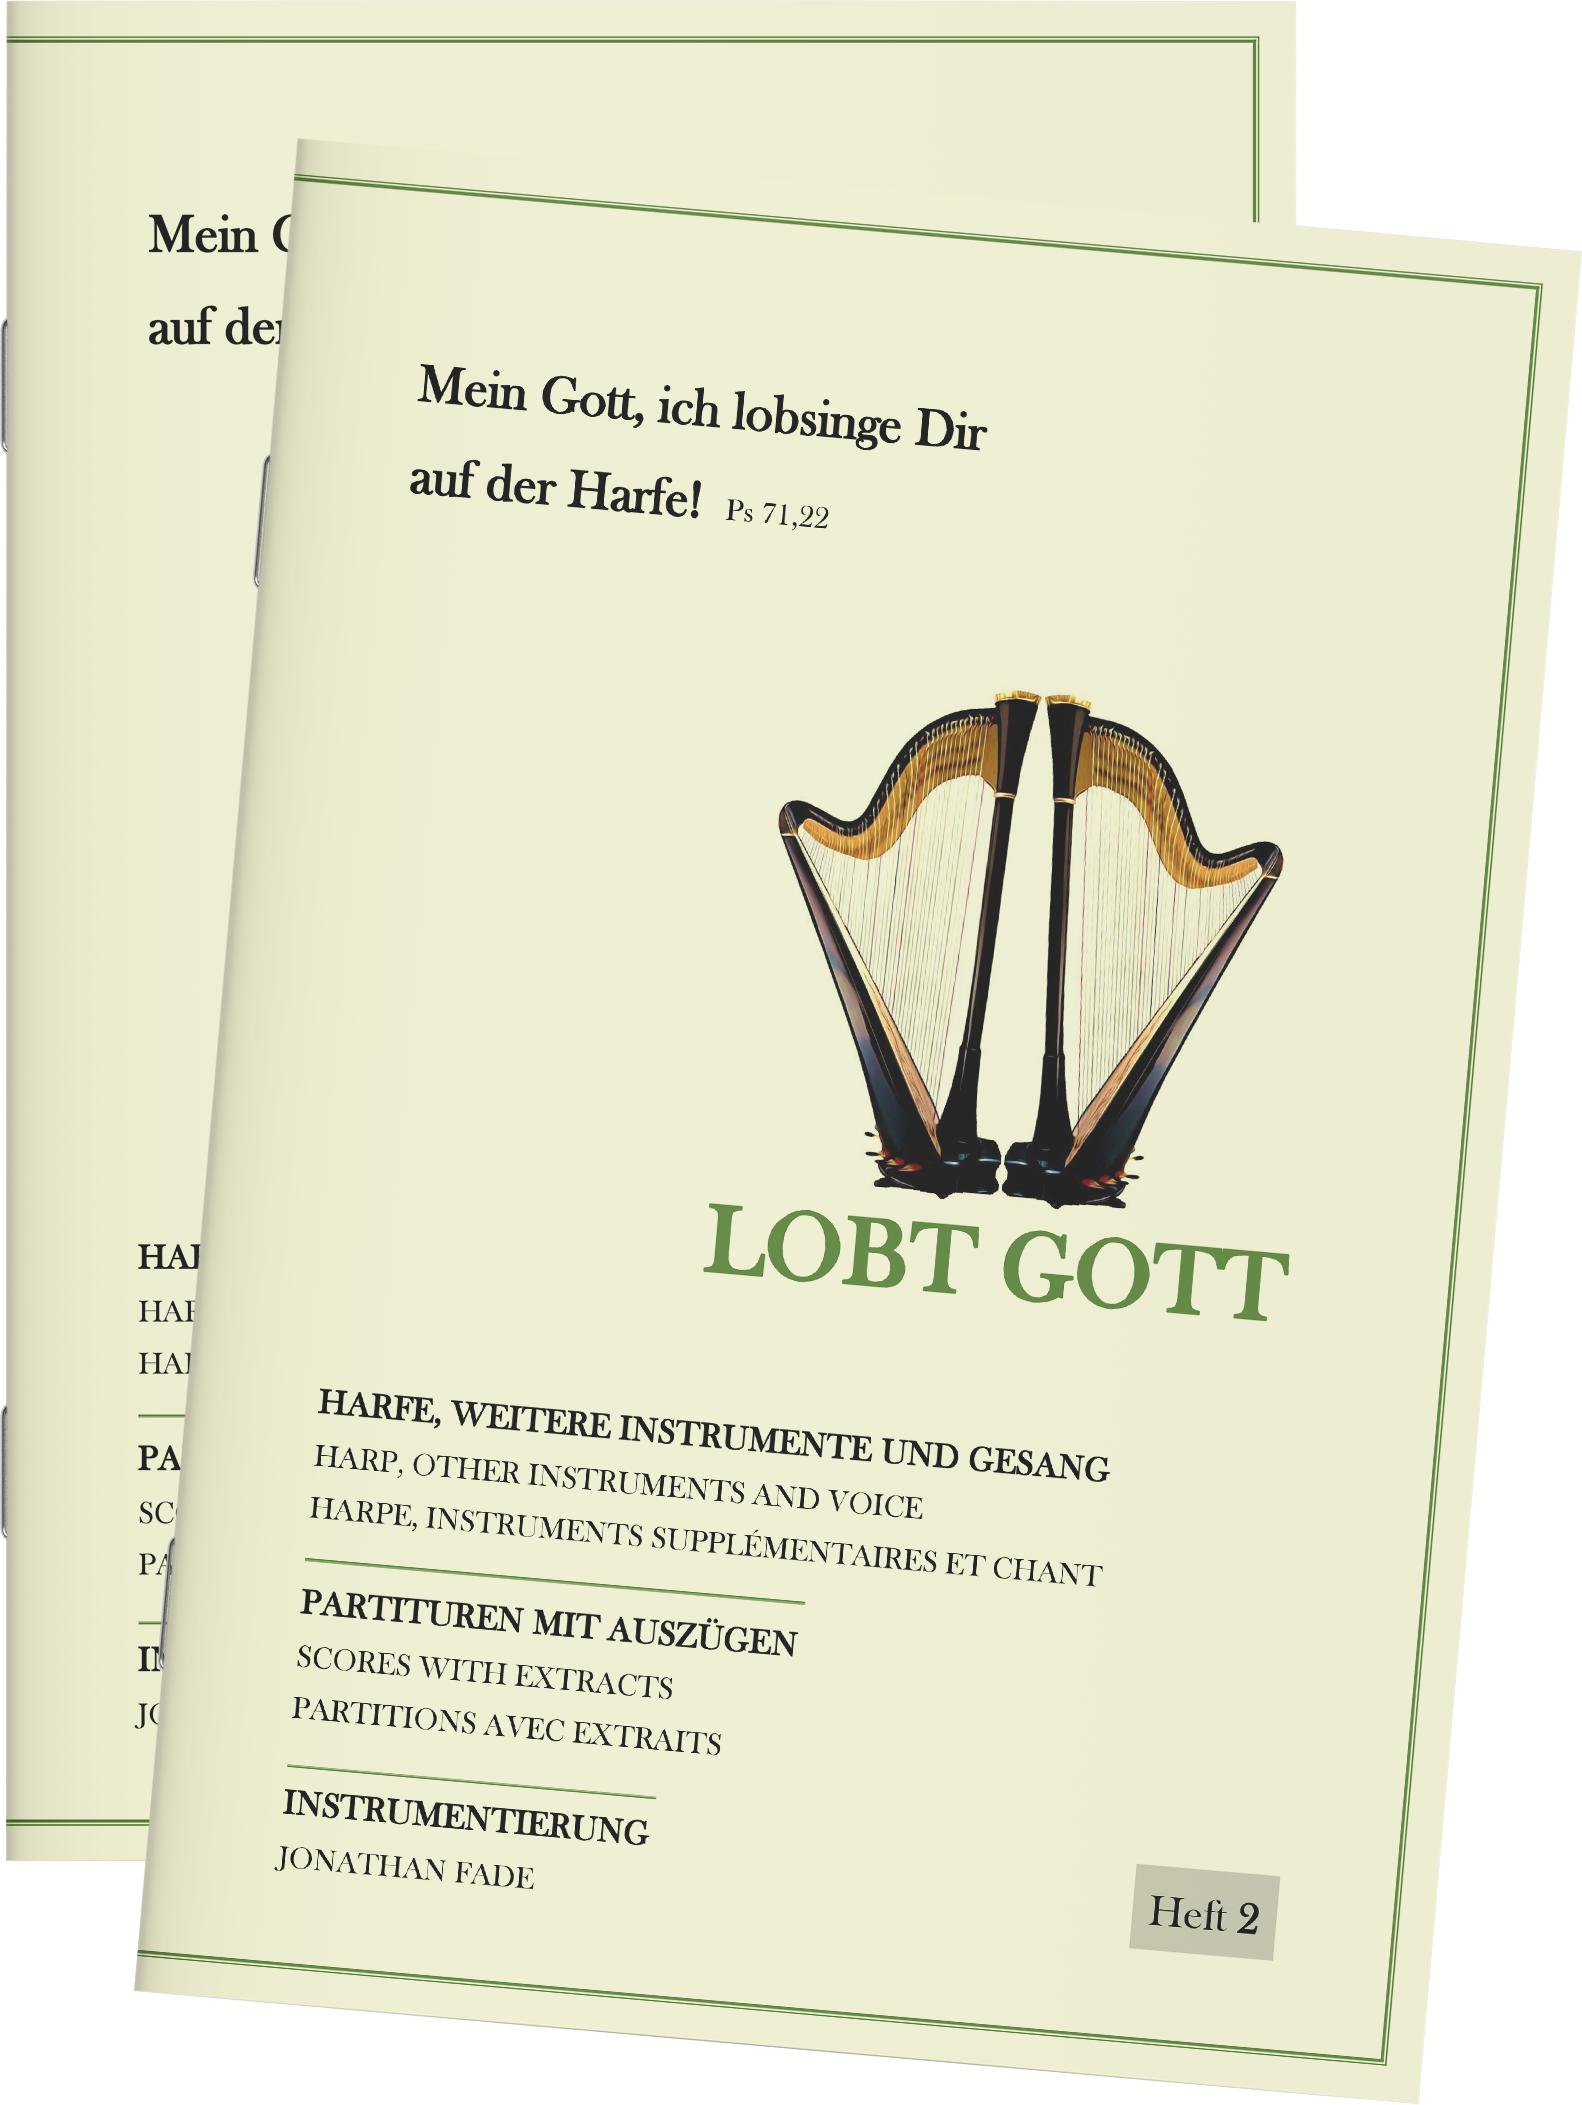 Harfenpartitur - Lobt Gott (Heft 2)